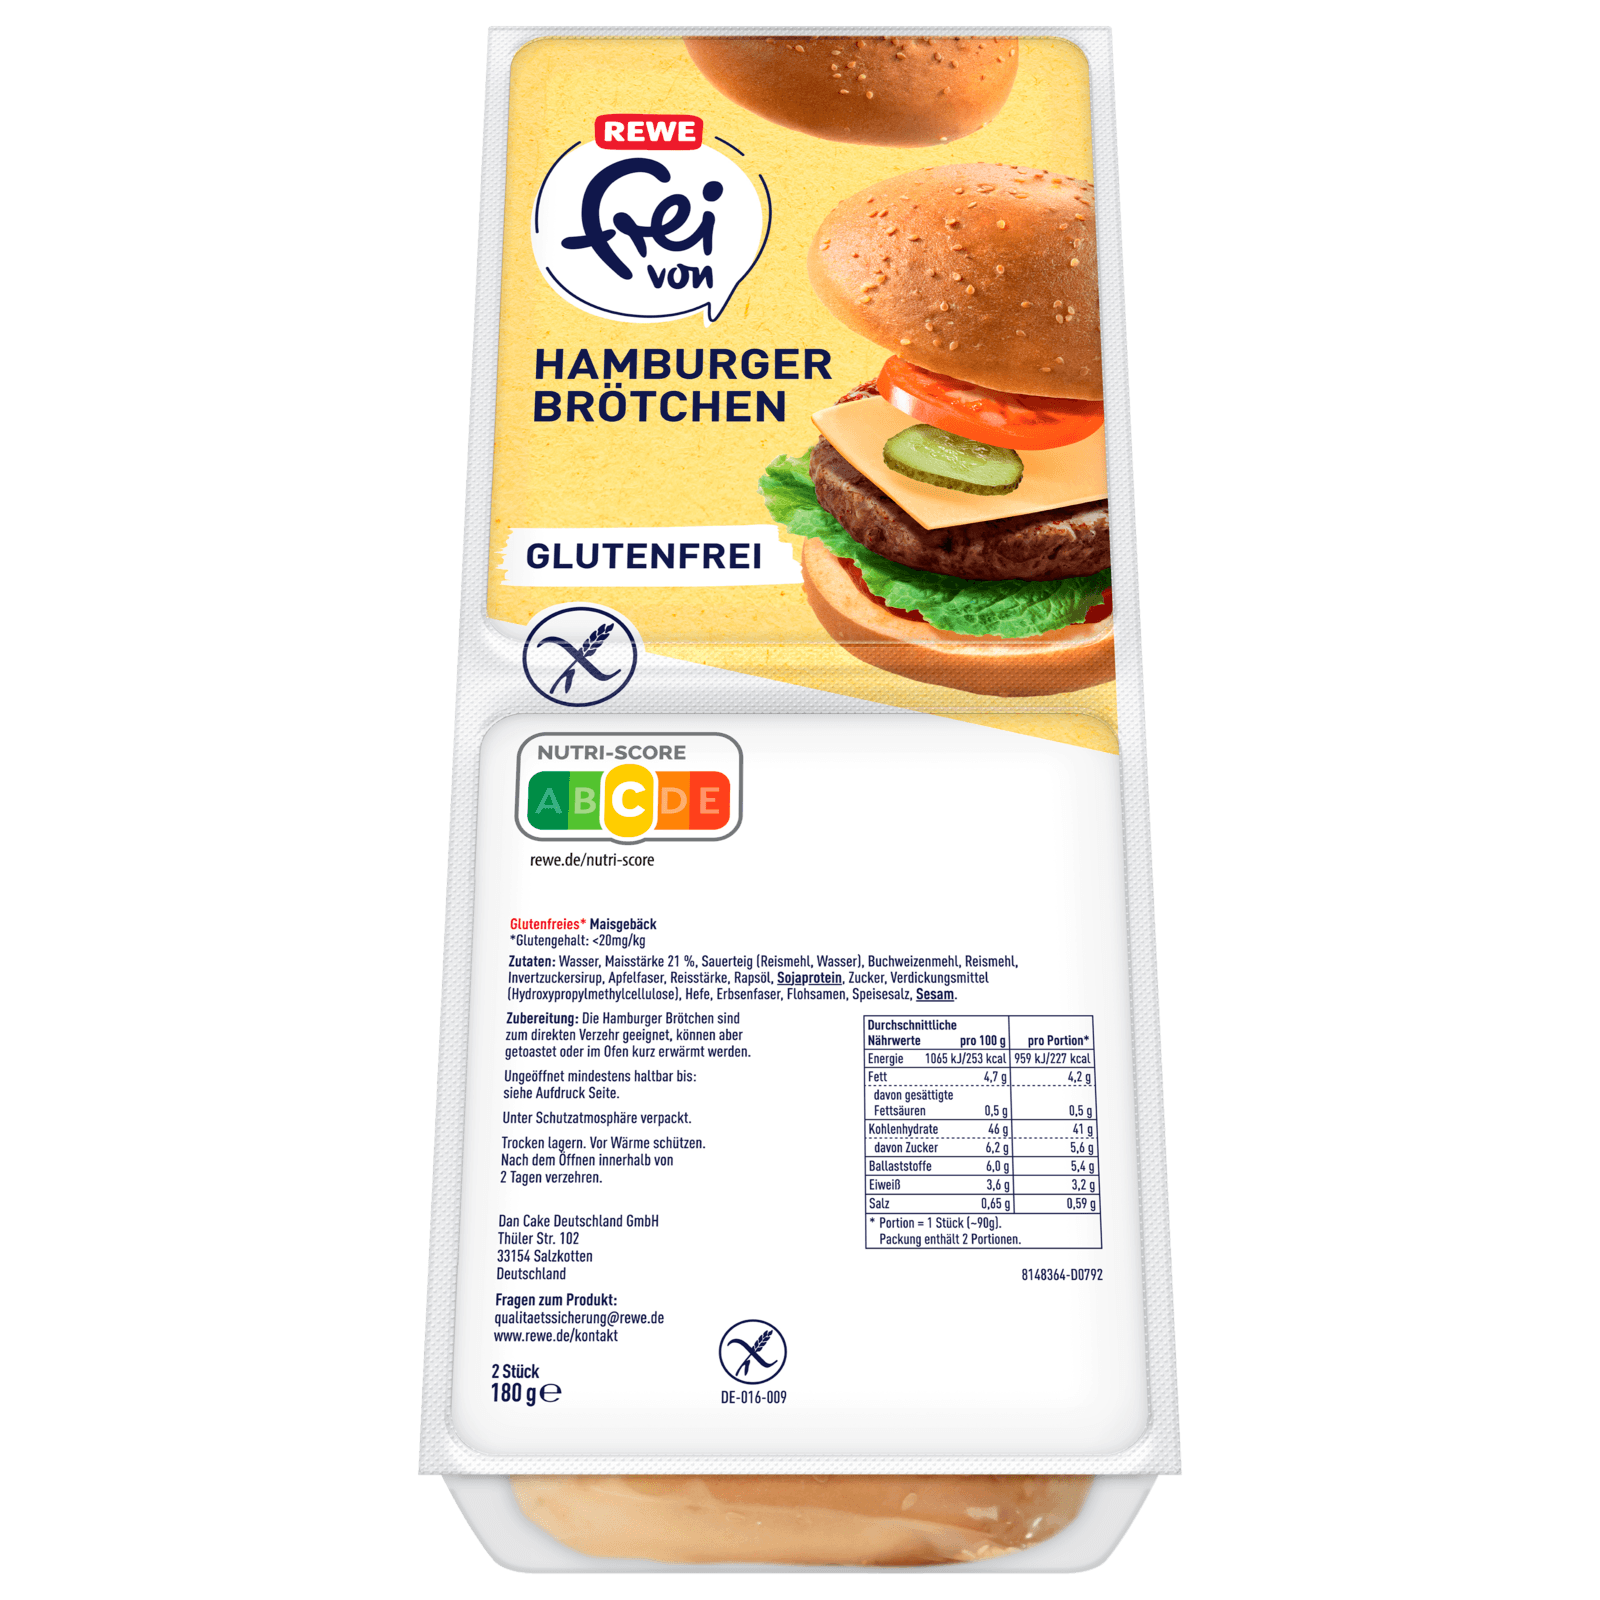 REWE frei von Hamburger Brötchen glutenfrei 180g bei REWE online bestellen!